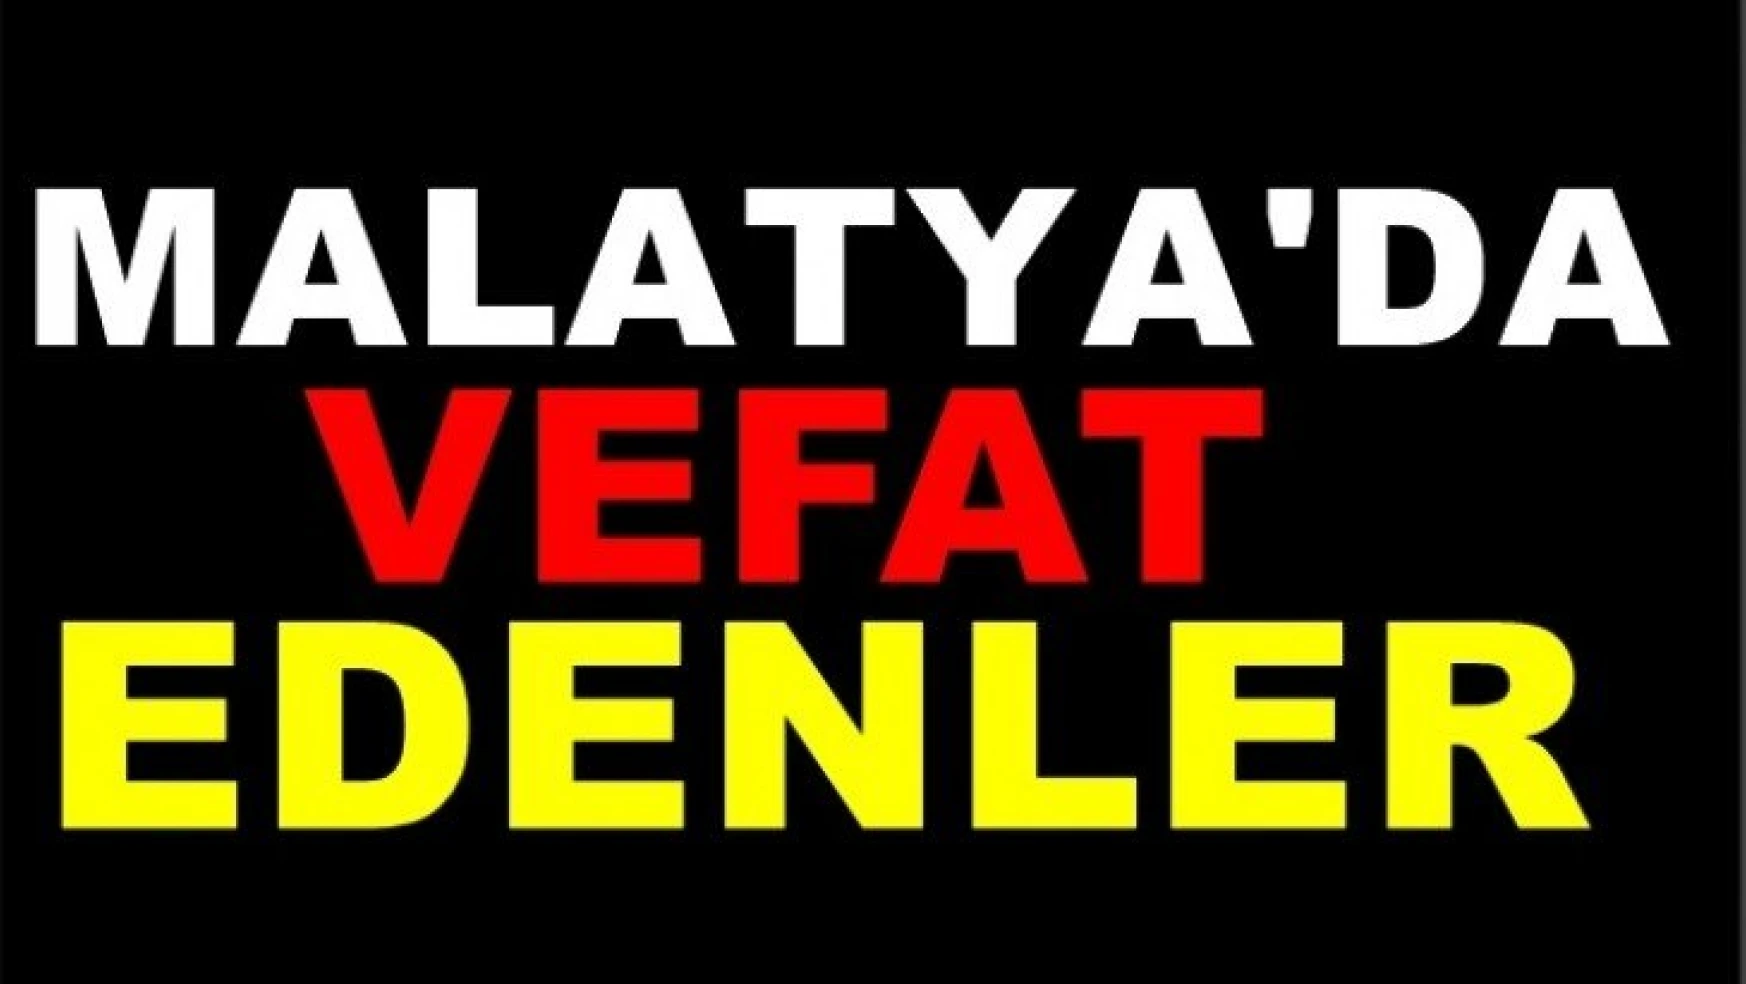 Malatya'da 7 Kişi Vefat etti